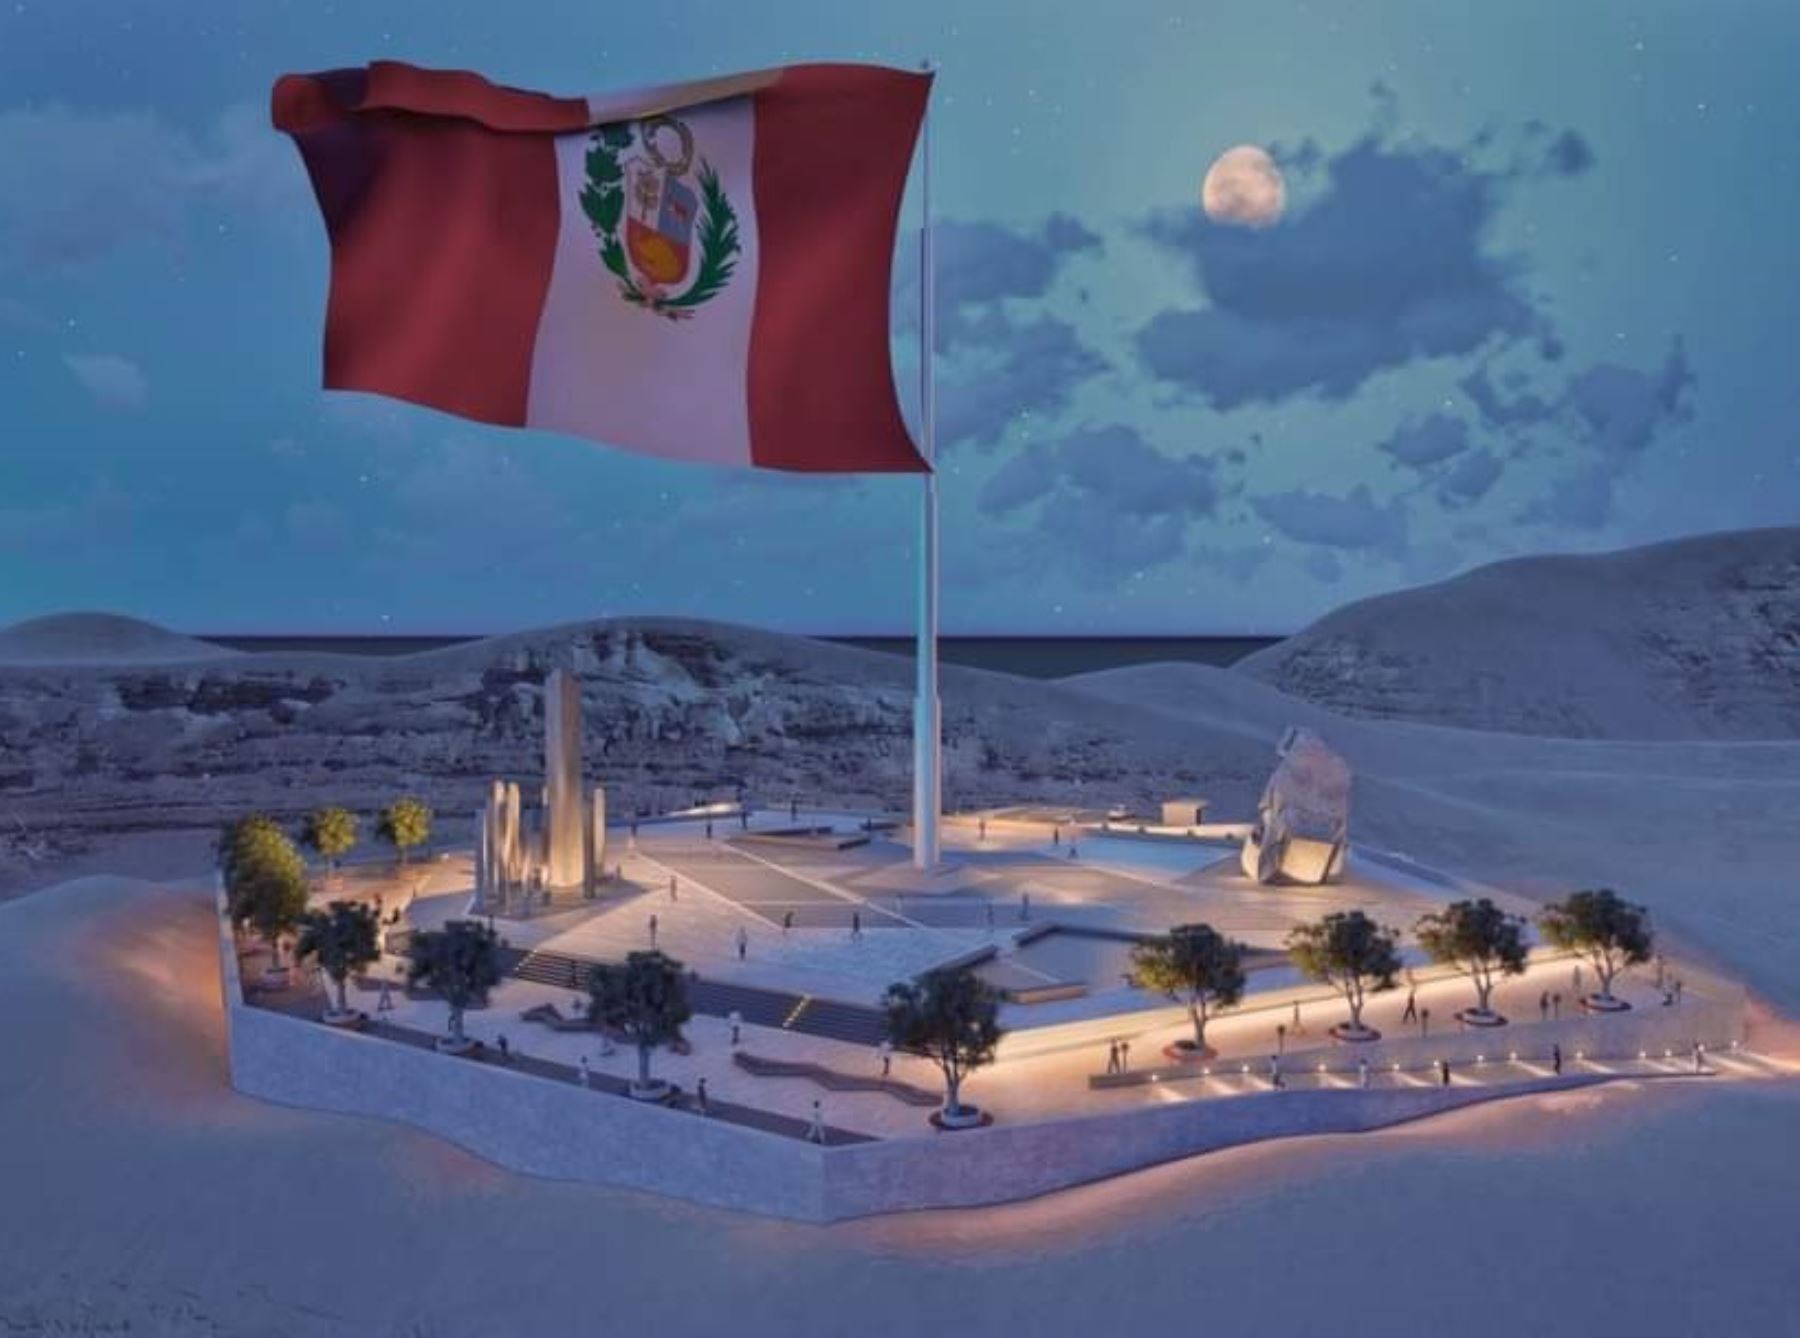 El Gobierno Regional de Tacna elabora proyecto de mirador turístico con la bandera más grande del Perú. ANDINA/Difusión